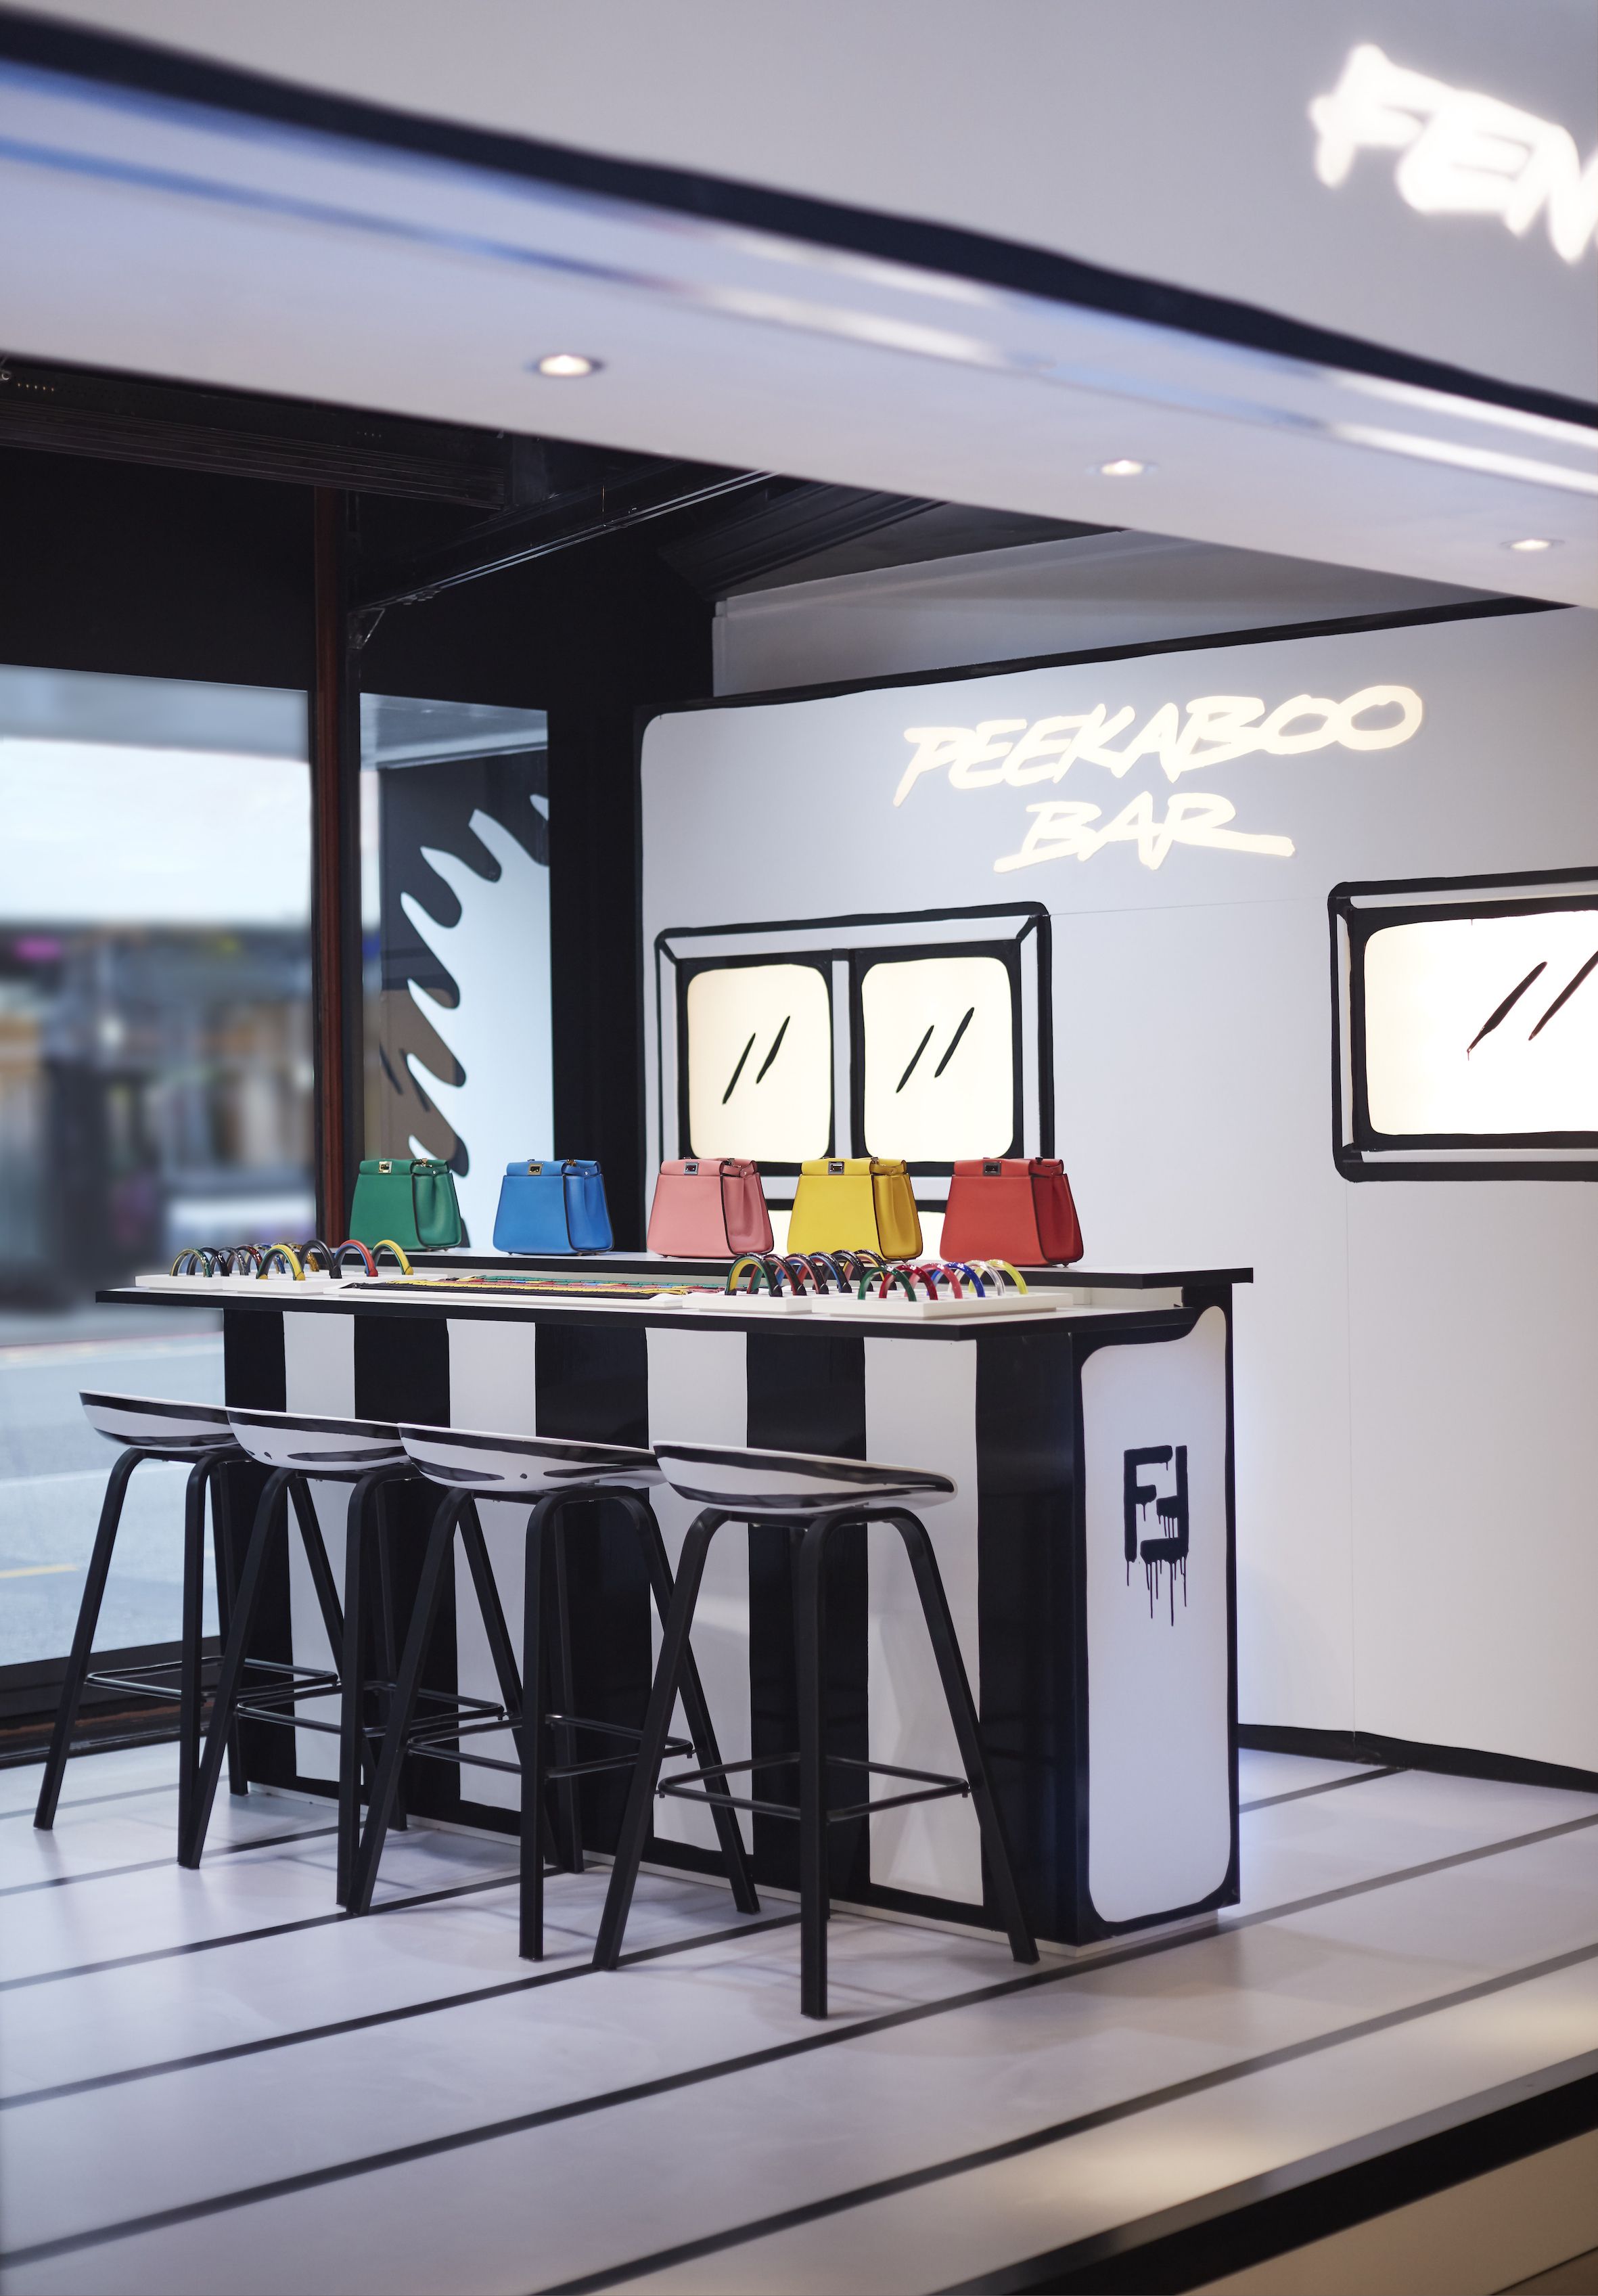 Fendi Caffe pop-up by Joshua Vides opens in Harrods